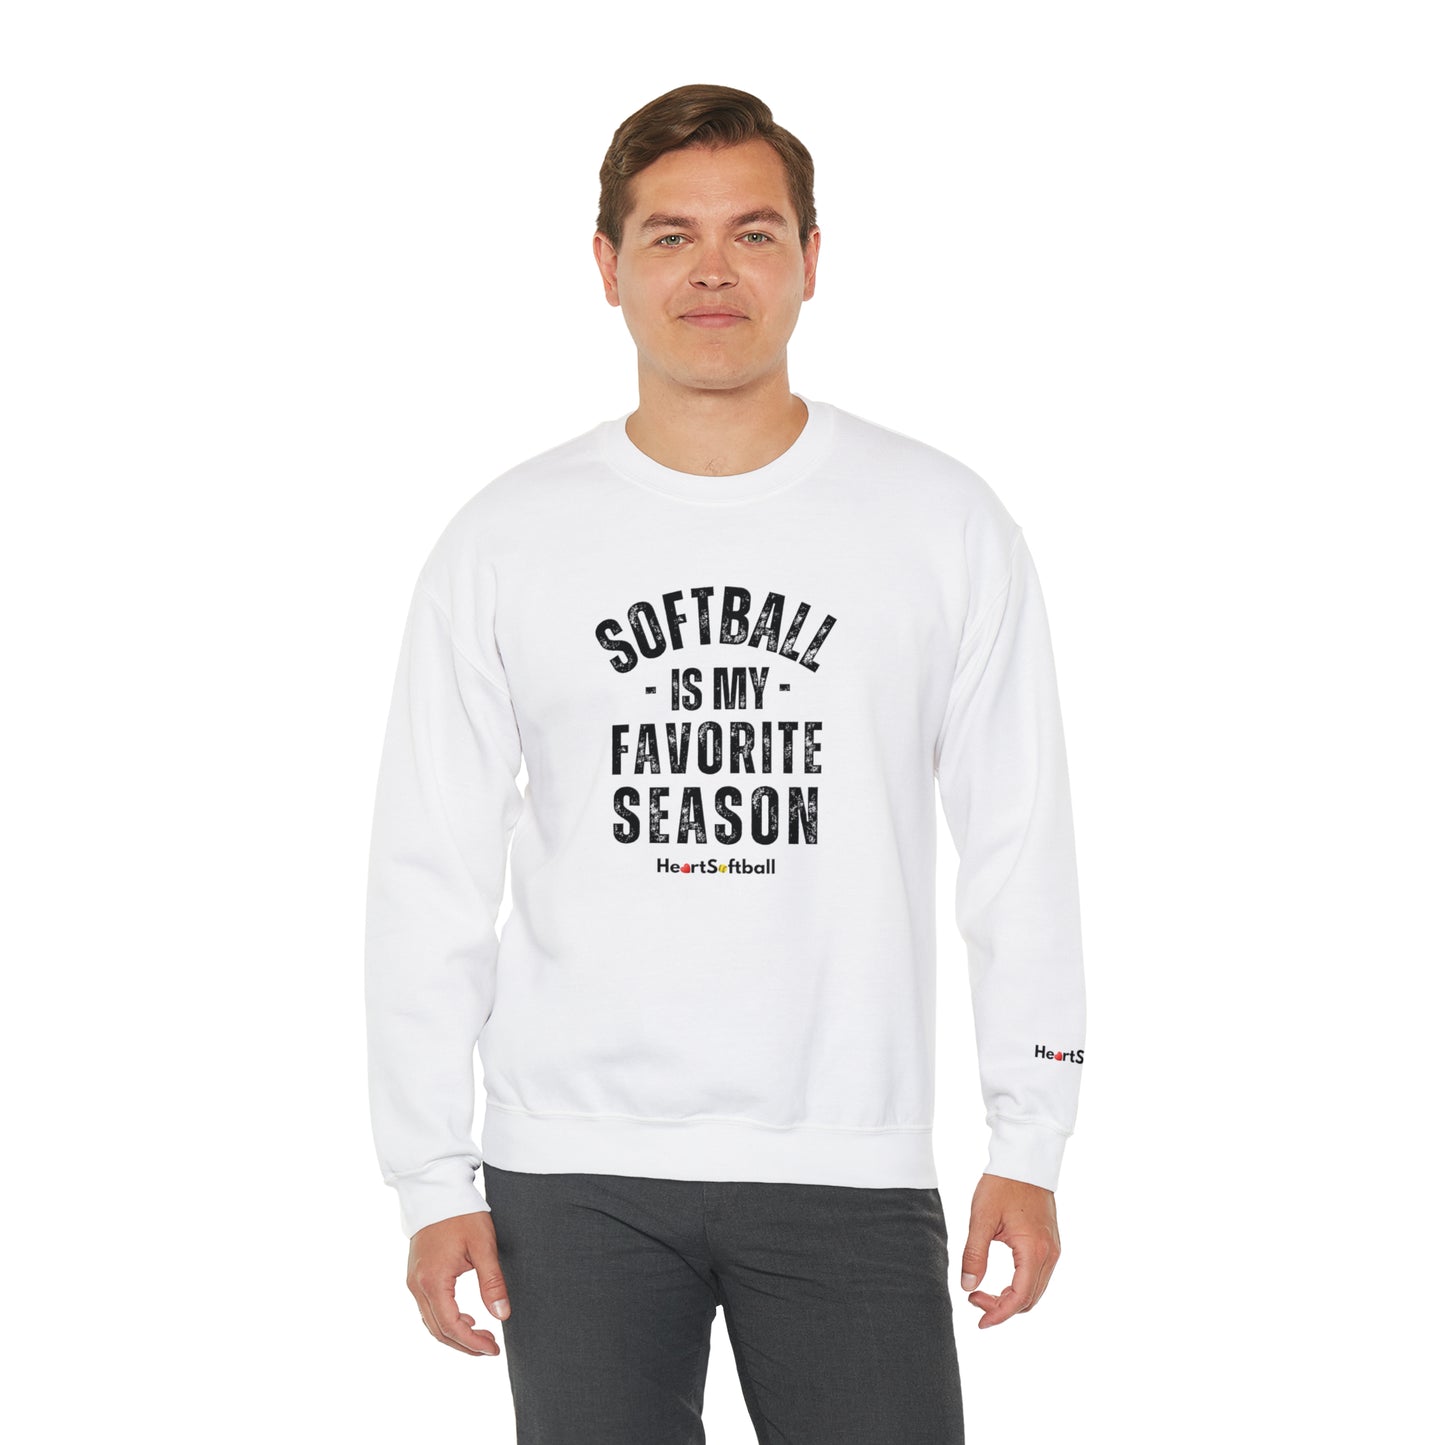 Favorite Season Crewneck Sweatshirt